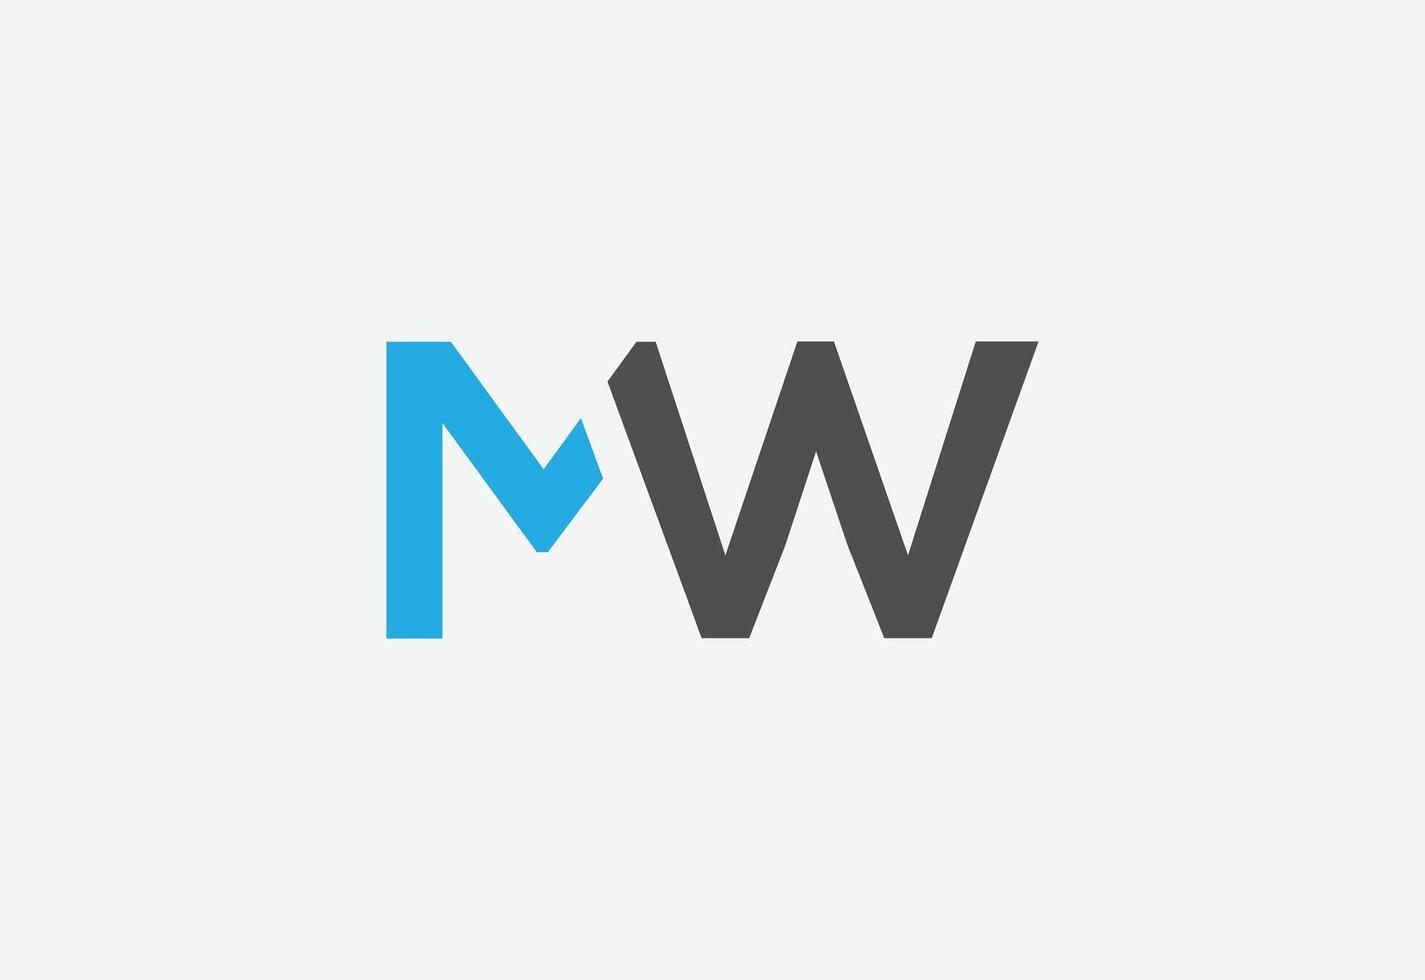 nuovo migliore mw creativo iniziale quest'ultimo logo.mw abstract.mw quest'ultimo design. vettore